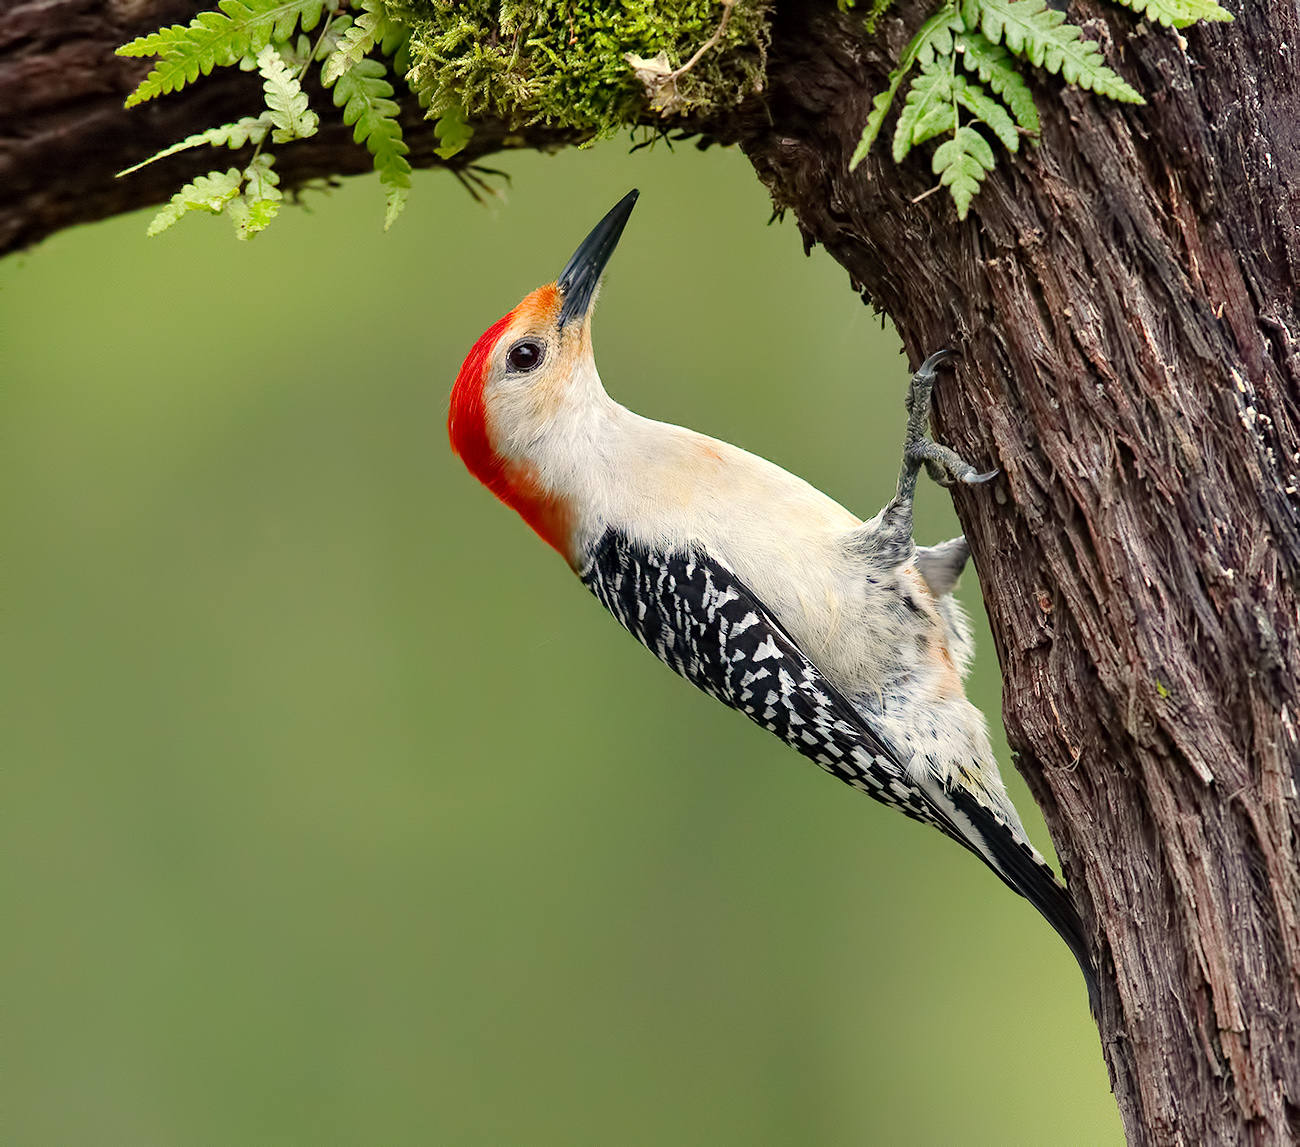  Red-bellied Woodpecker male - Cамец. Каролинский меланерпес